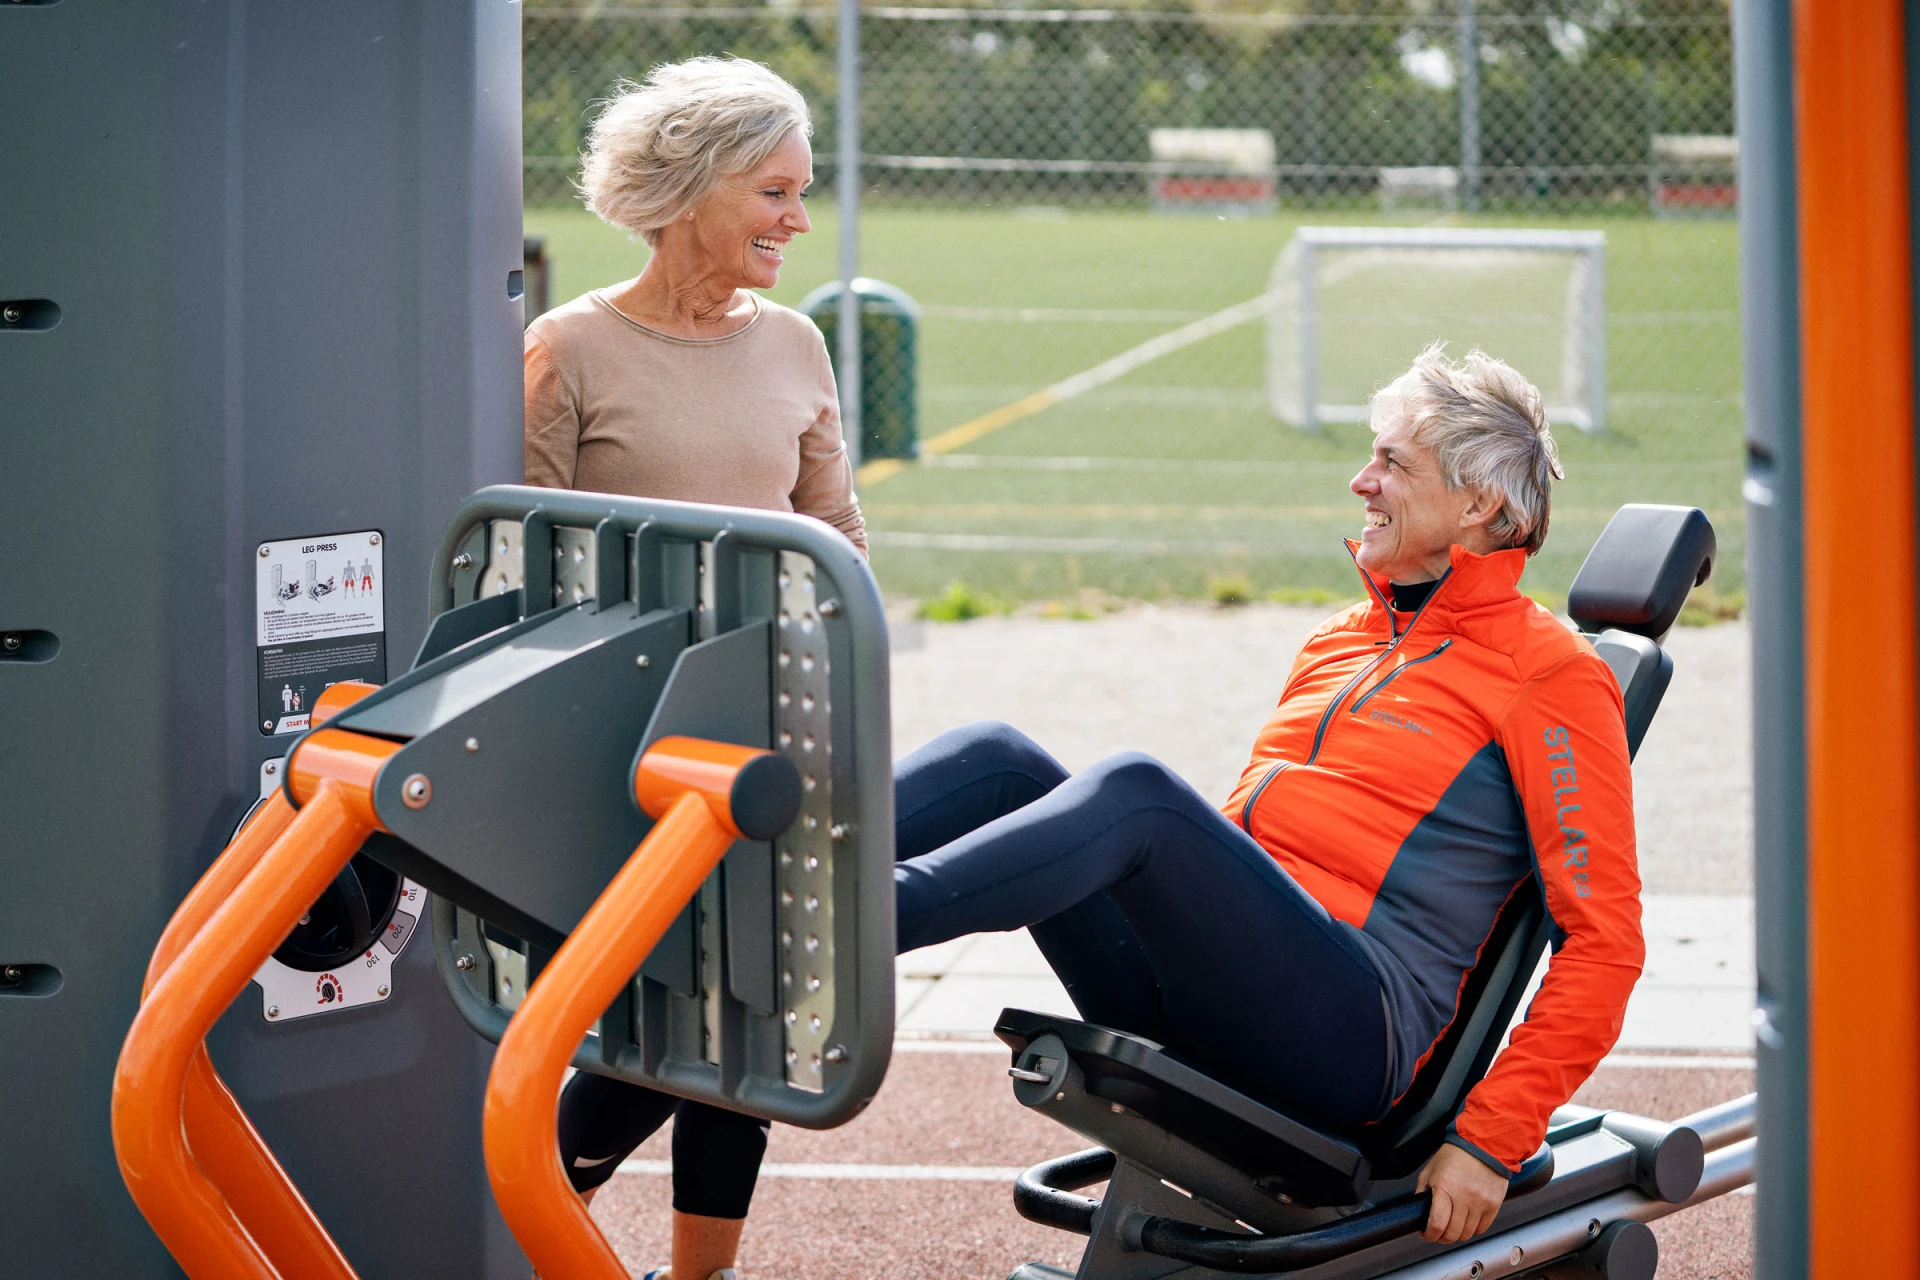 Deux personnes âgées s'entraînant sur un appareil de musculation de fitness en plein air, dans un parc.